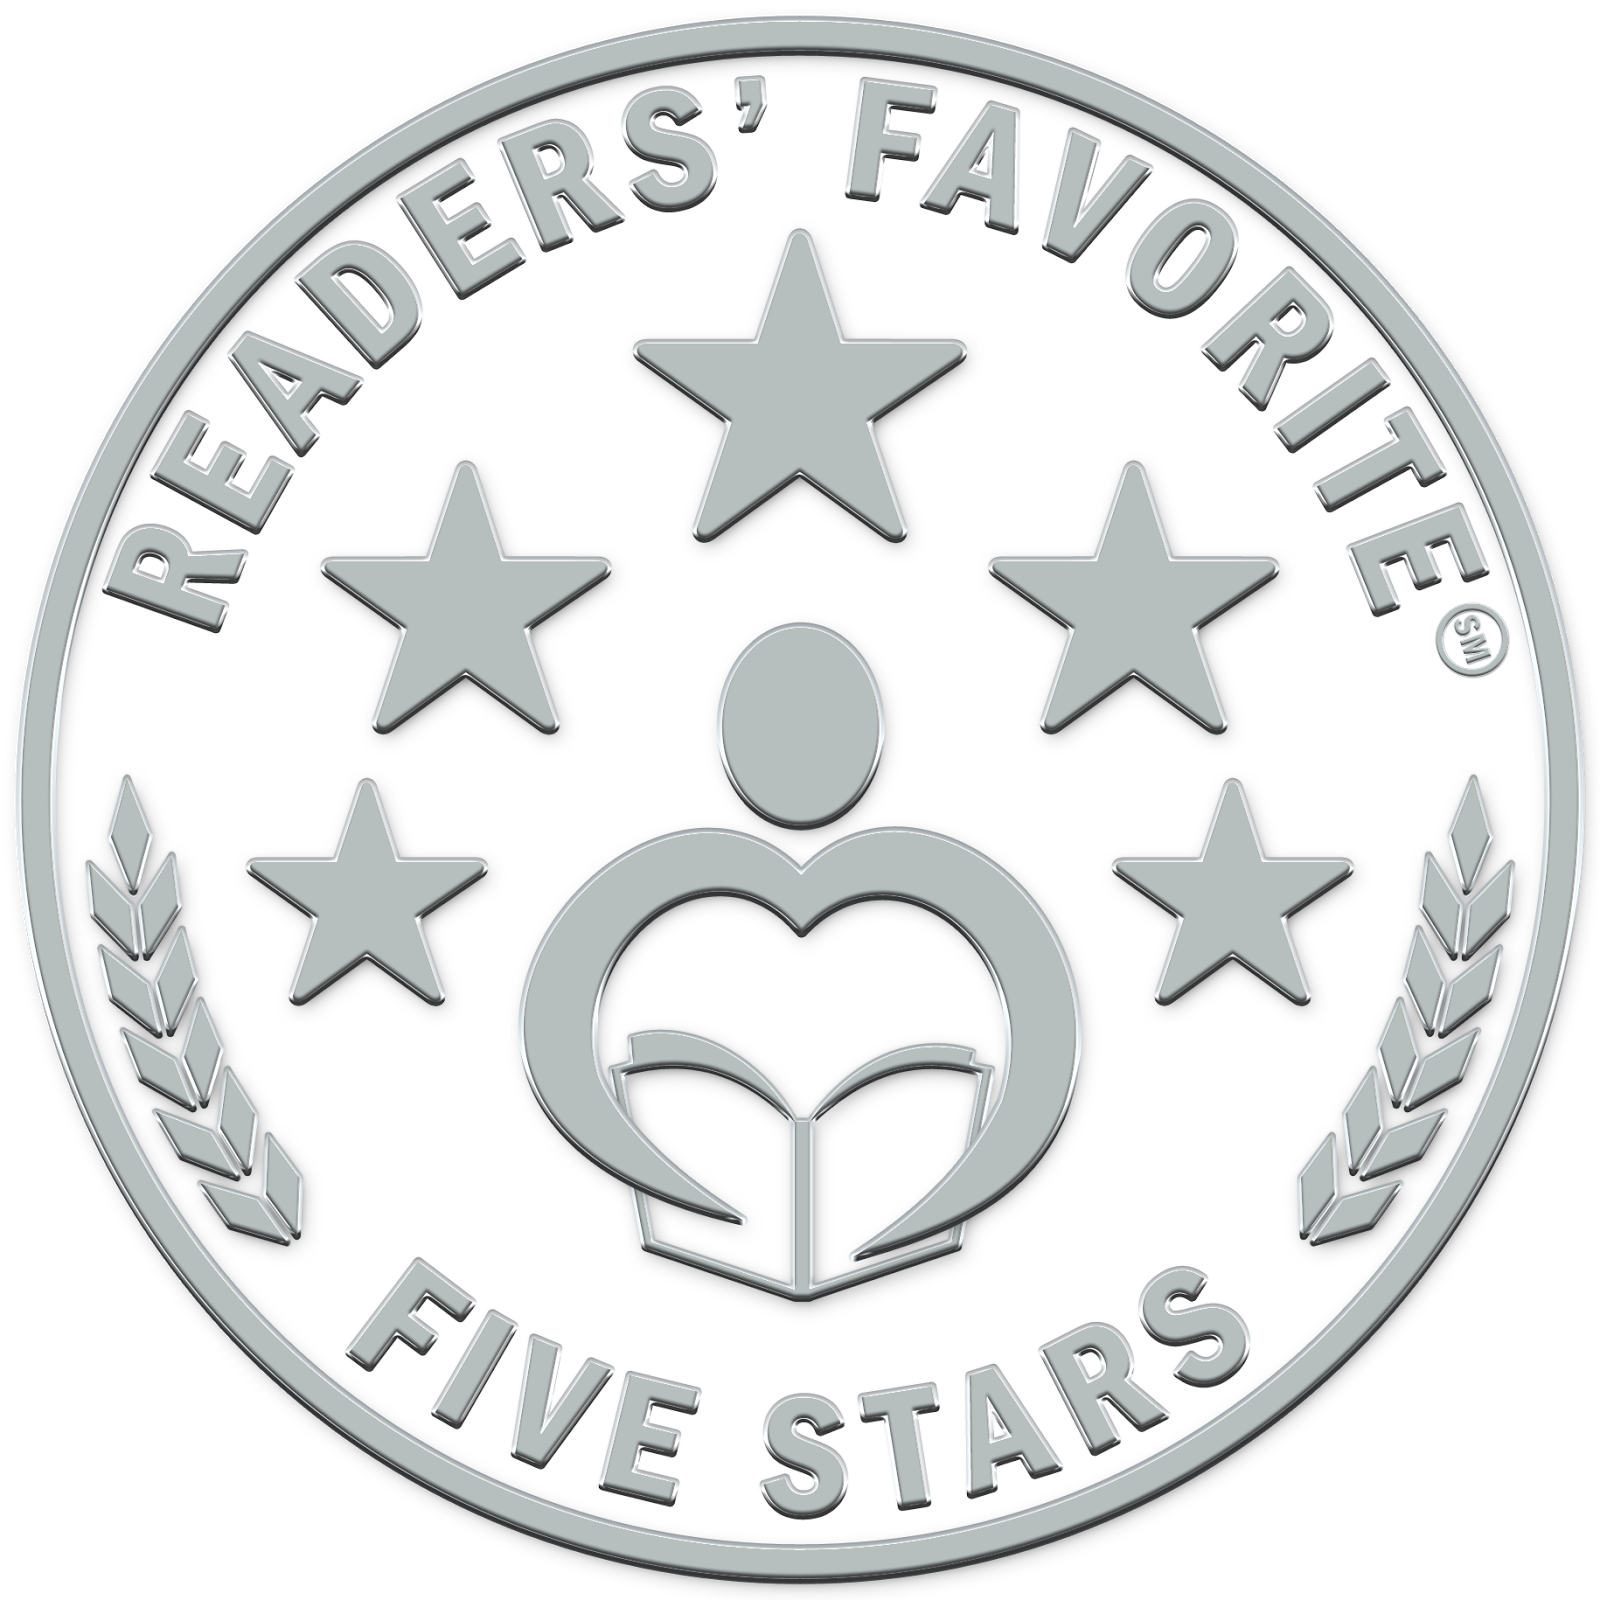 Mrs. D's books: 5 Star Readers’ Favorite